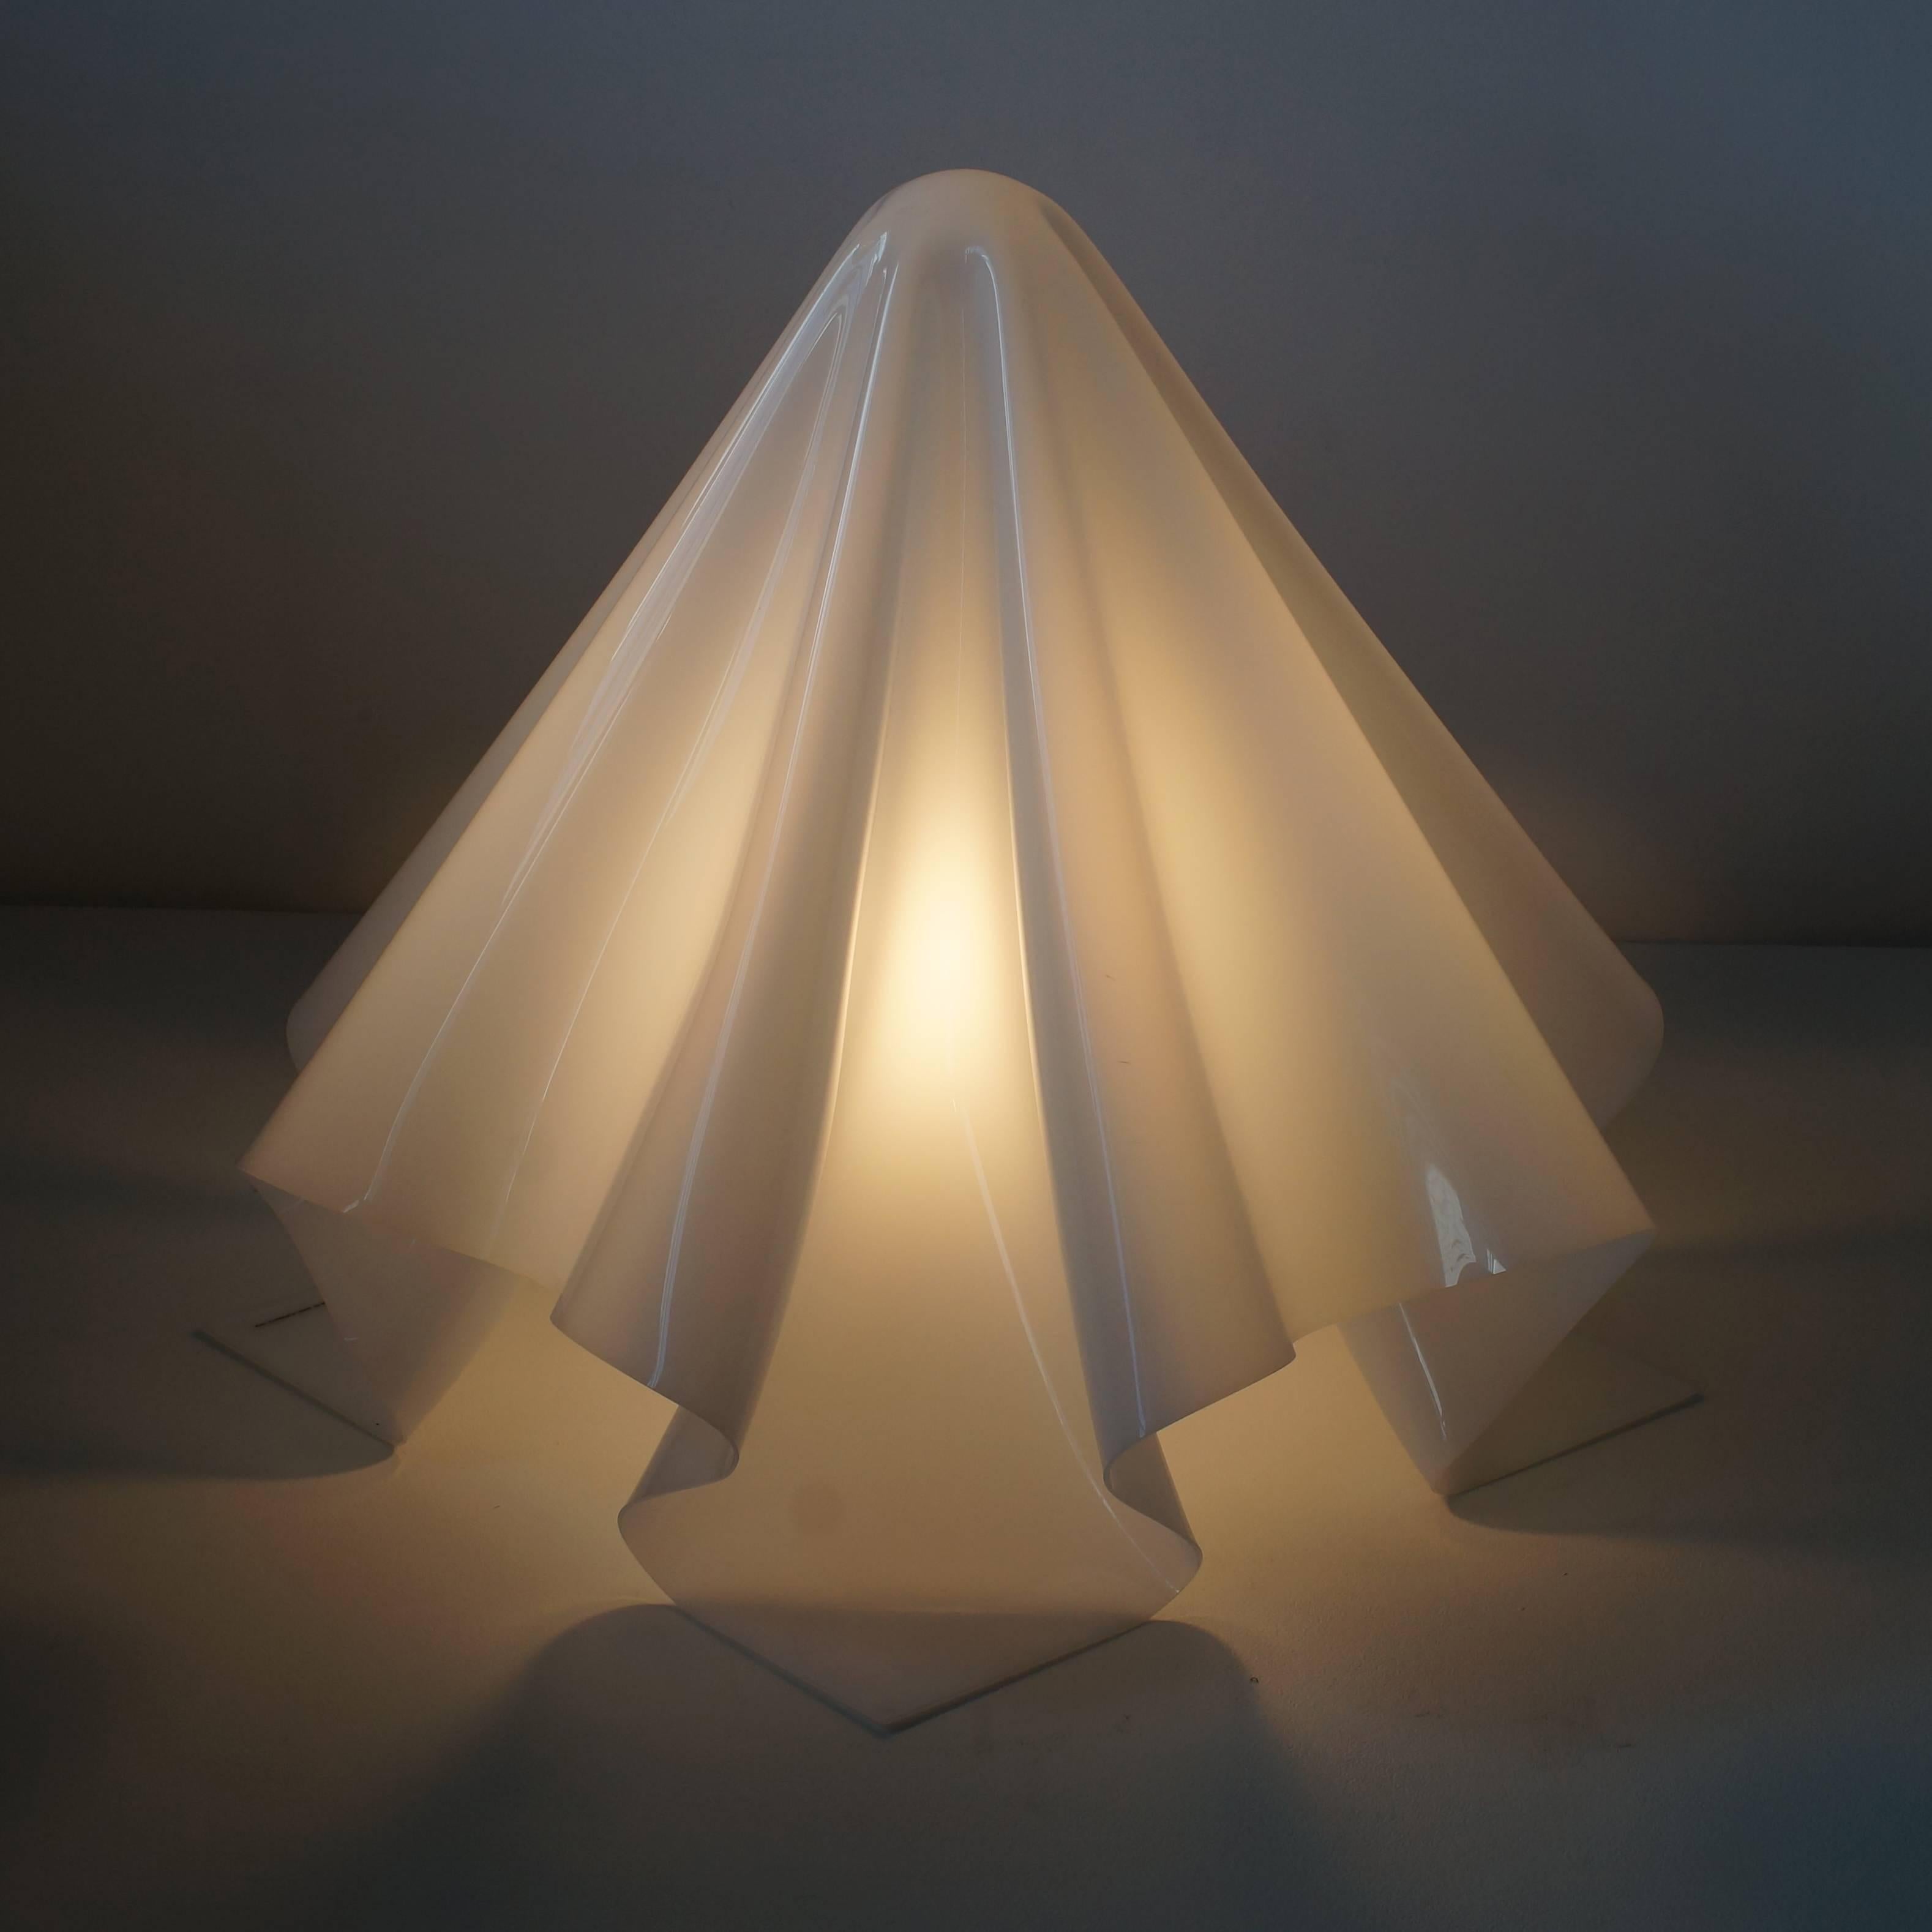 2 Shiro Kuramata white acrylic Ghost Lamp Large In Good Condition In Shibuya-ku, Tokyo